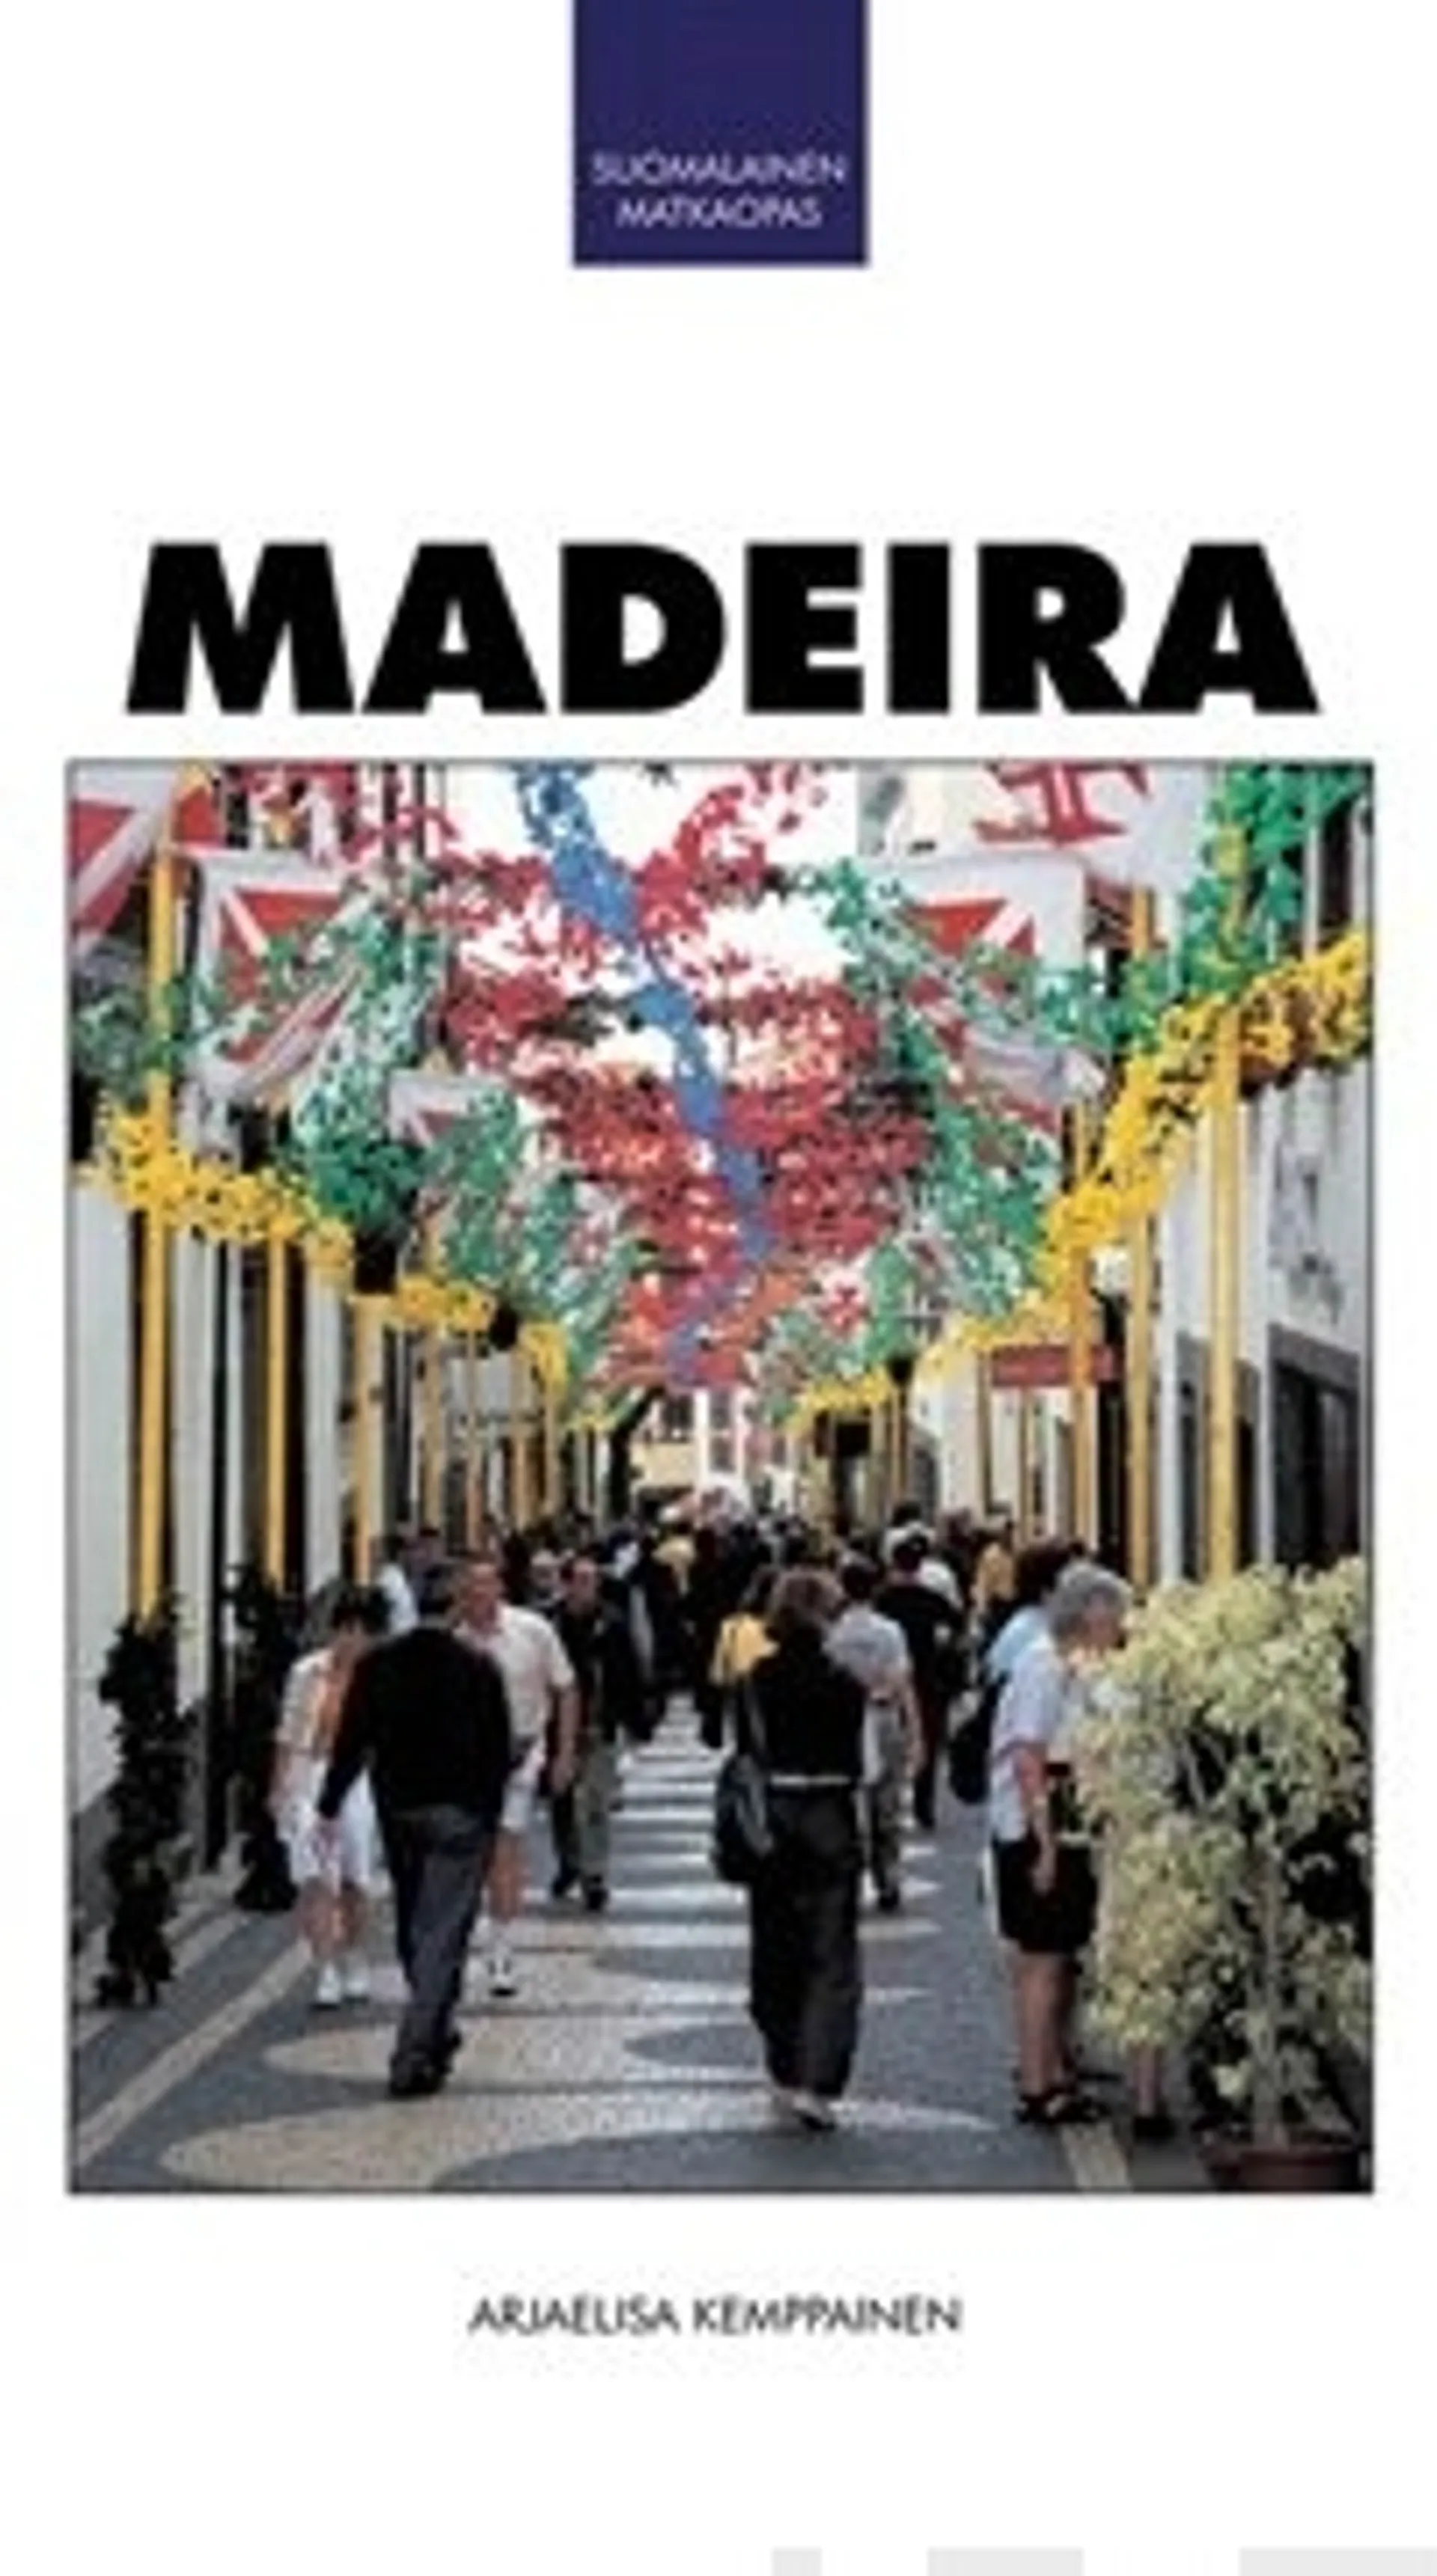 Madeira suomalainen matkaopas